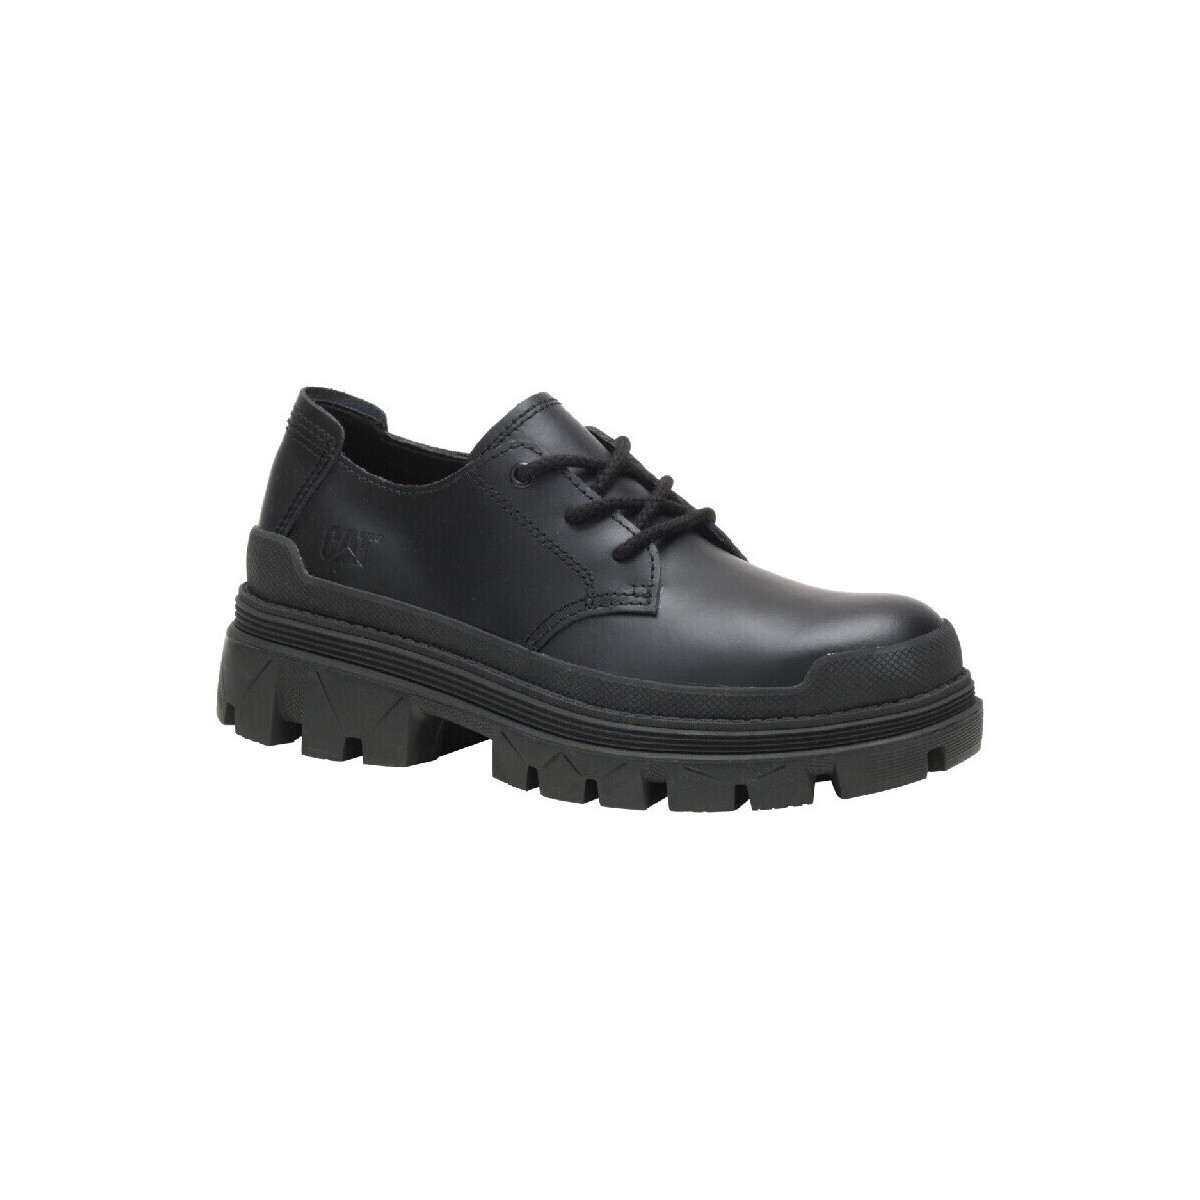 Chaussures Homme Connectez vous ou créez un compte avec Hardwear Oxford Noir